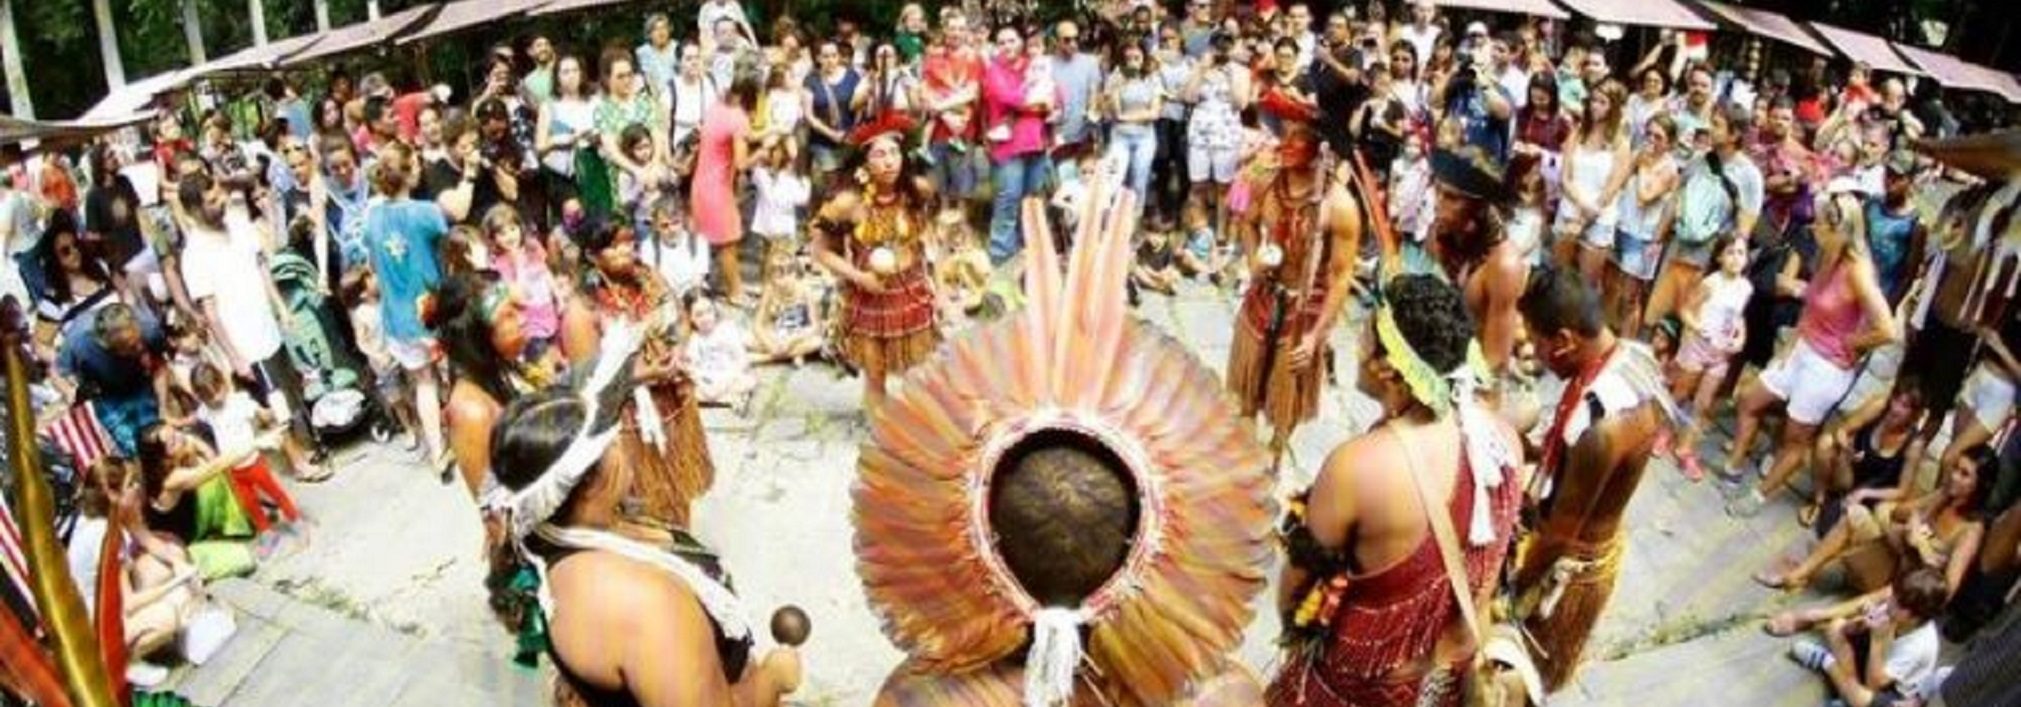 Dia dos Povos Indigenas no Parque Lage